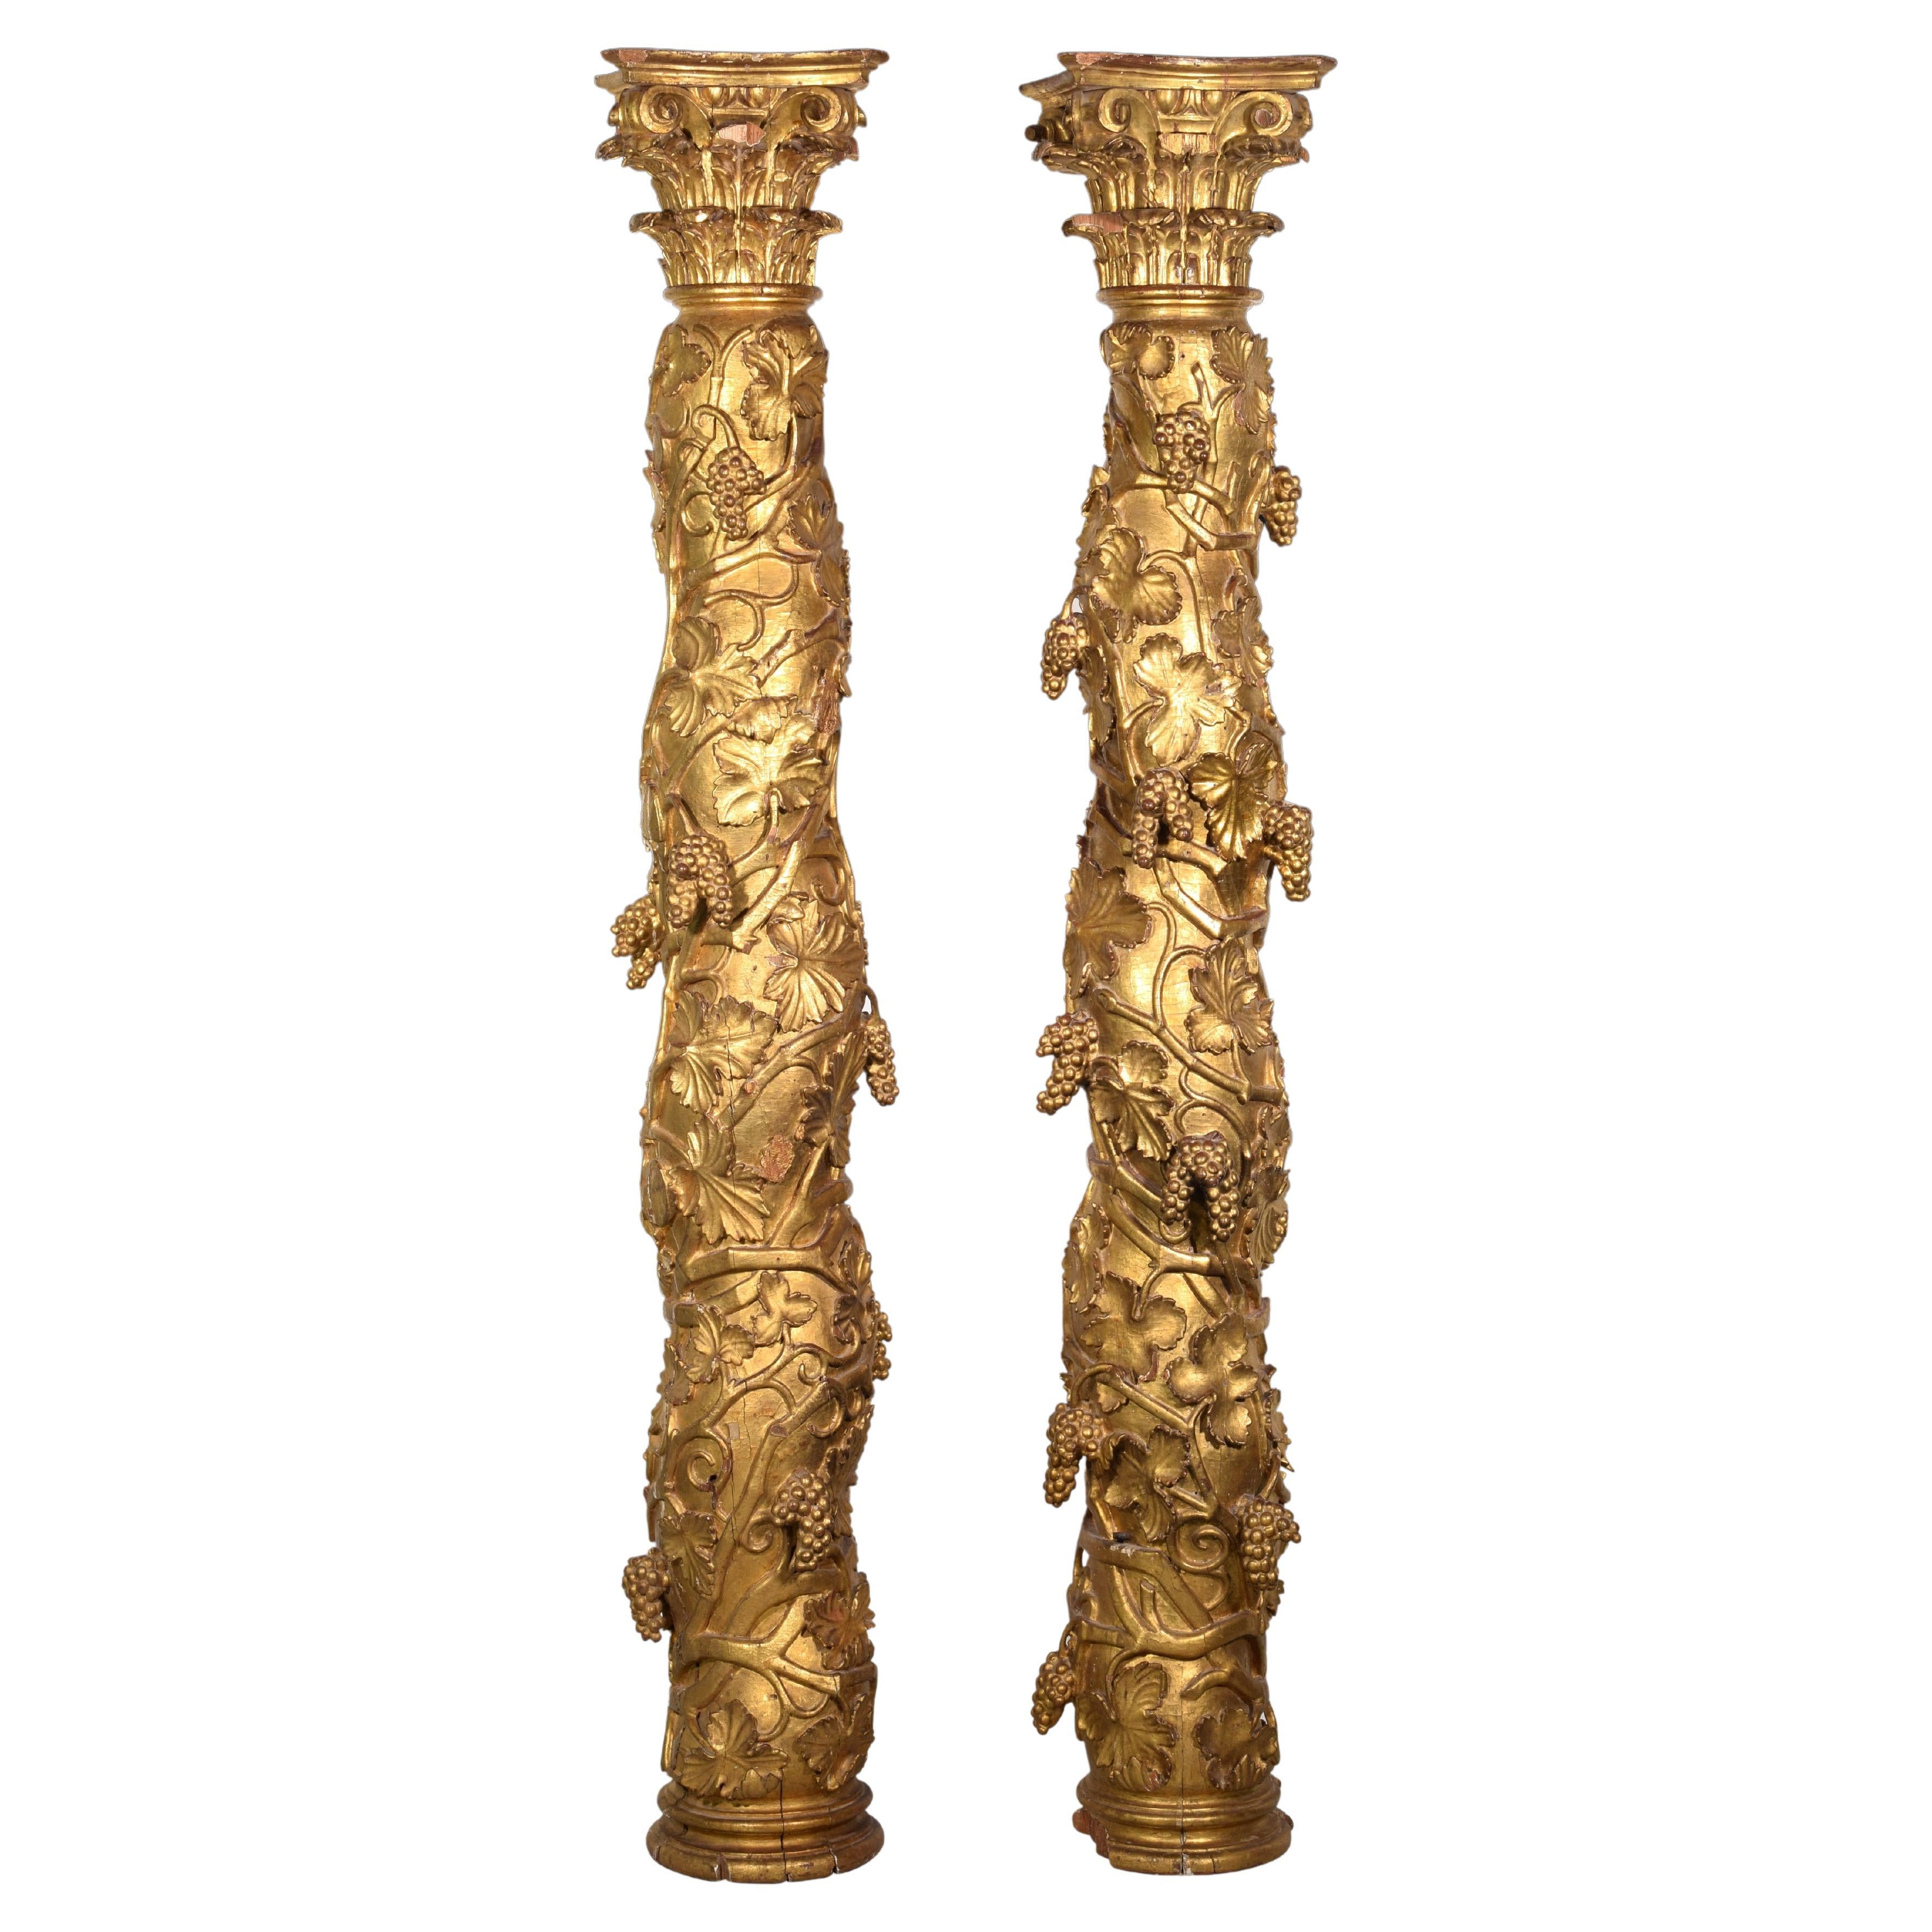 Ein Paar solomonicische Säulen. Holz. Spanien, zweite Hälfte des 17. Jahrhunderts.